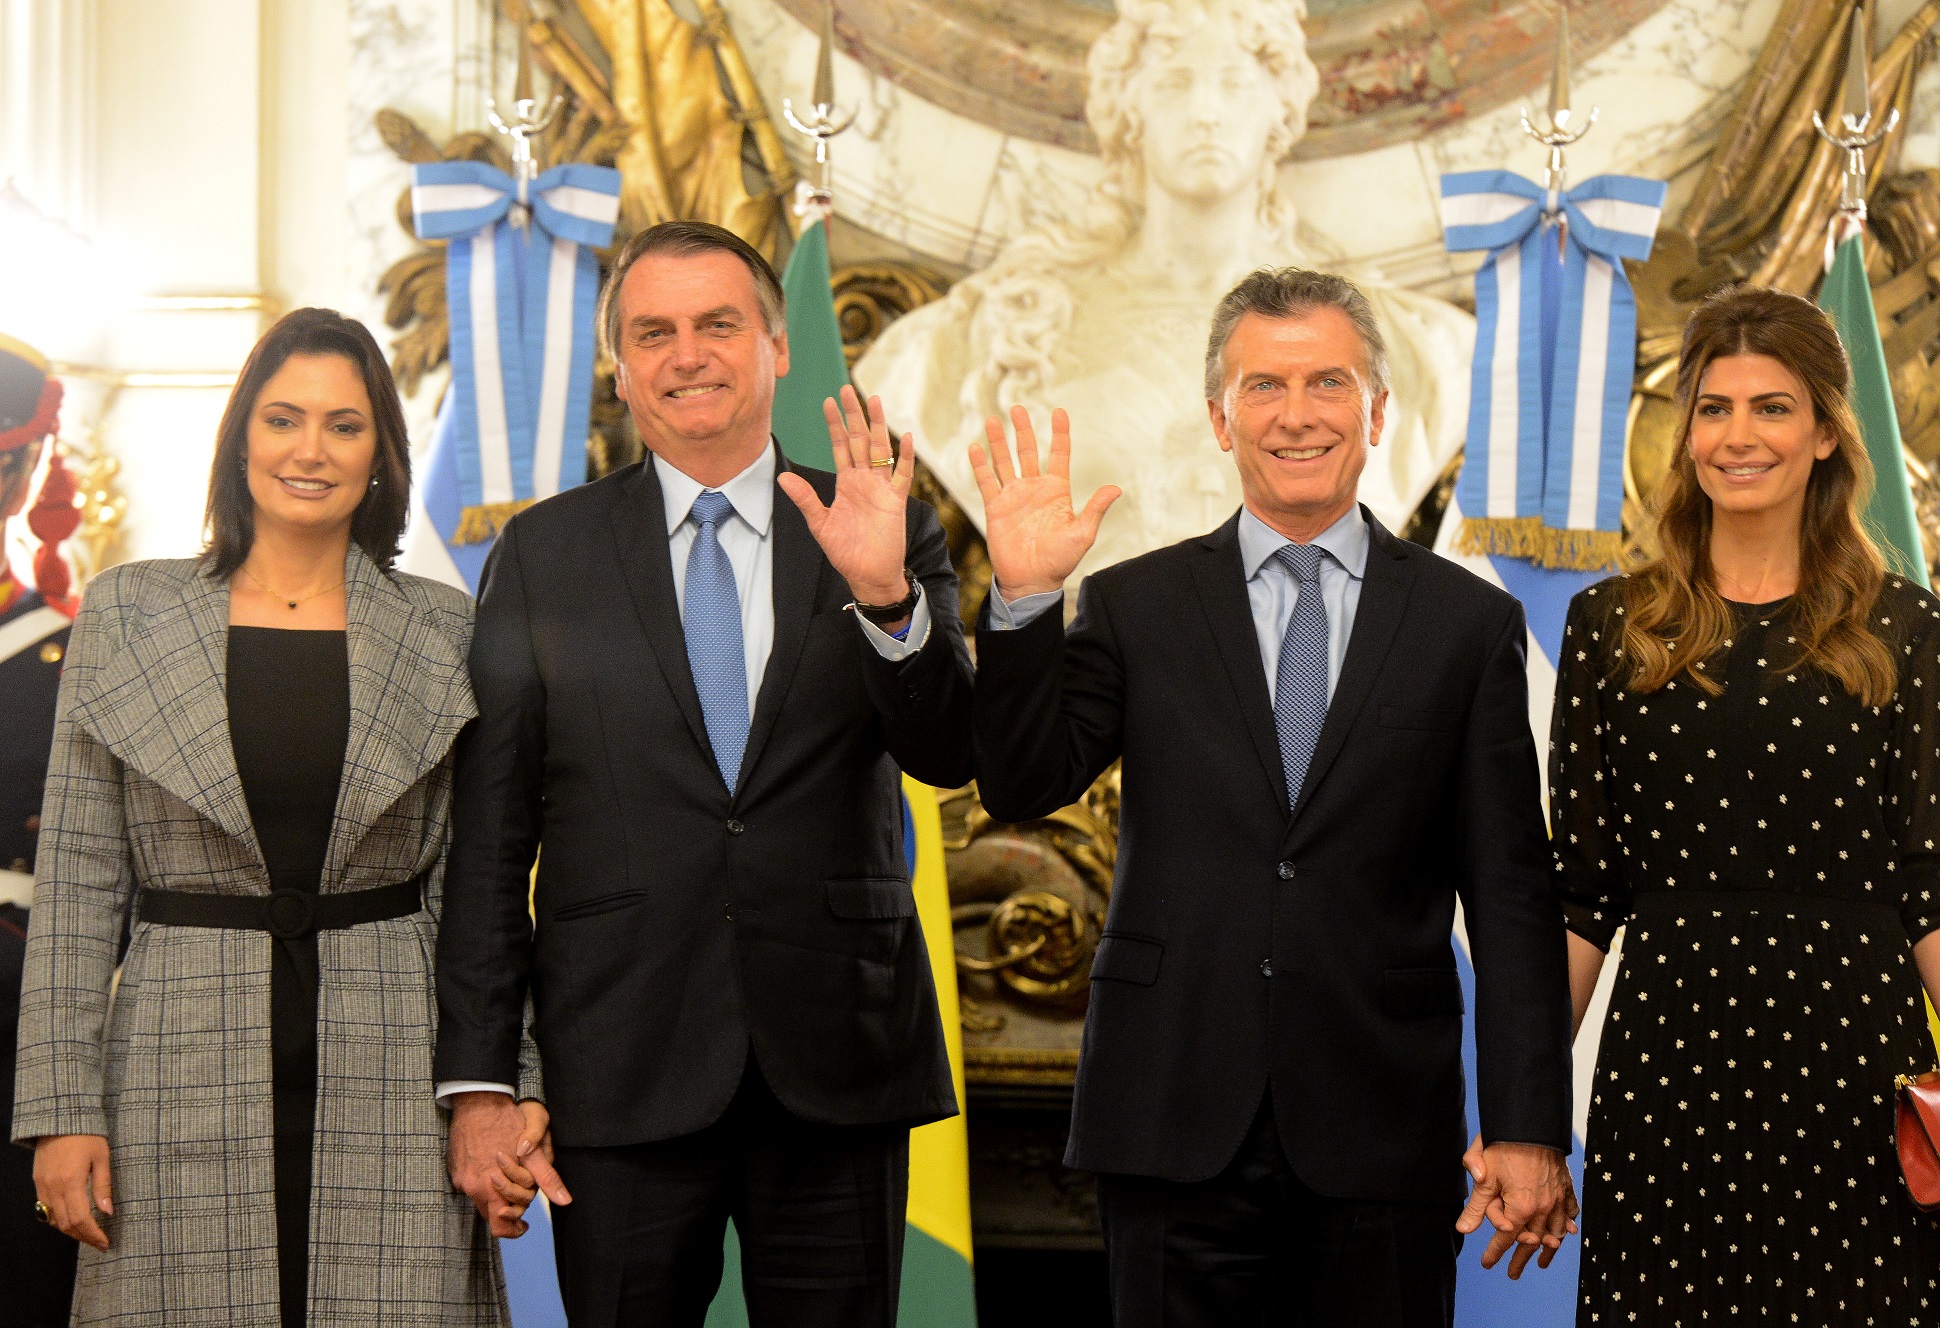 La Argentina y Brasil acuerdan trabajar para fortalecer las relaciones bilaterales y la democracia en la región